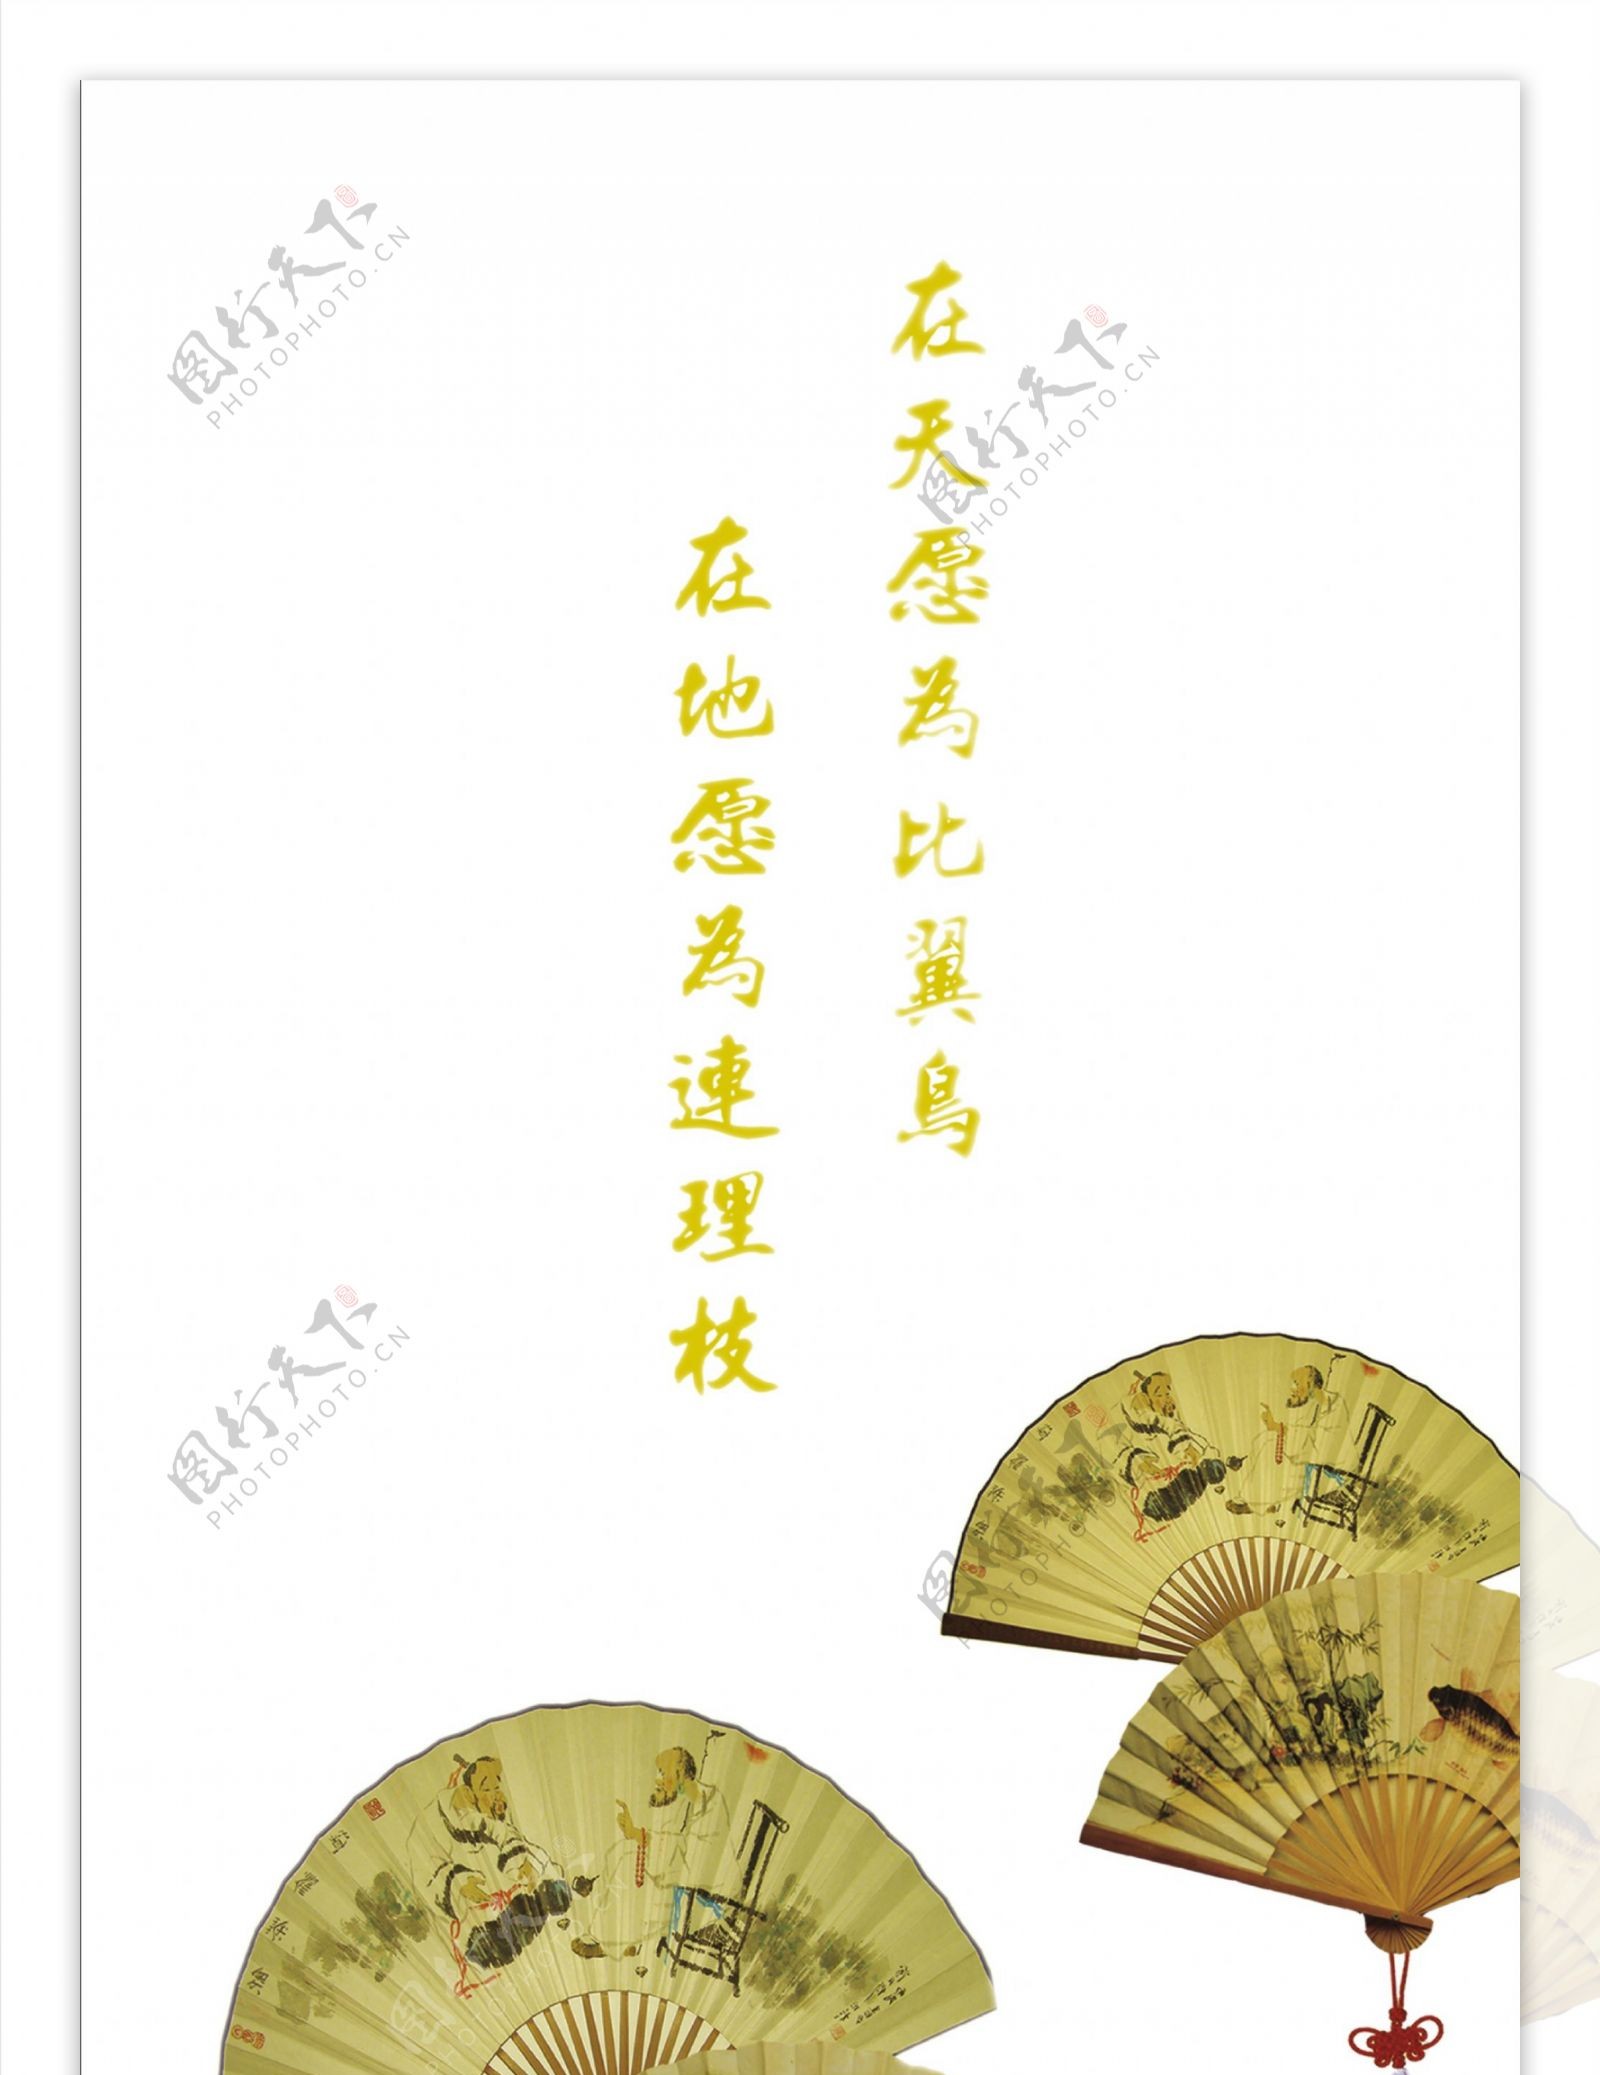 移门装饰图片扇子中国节